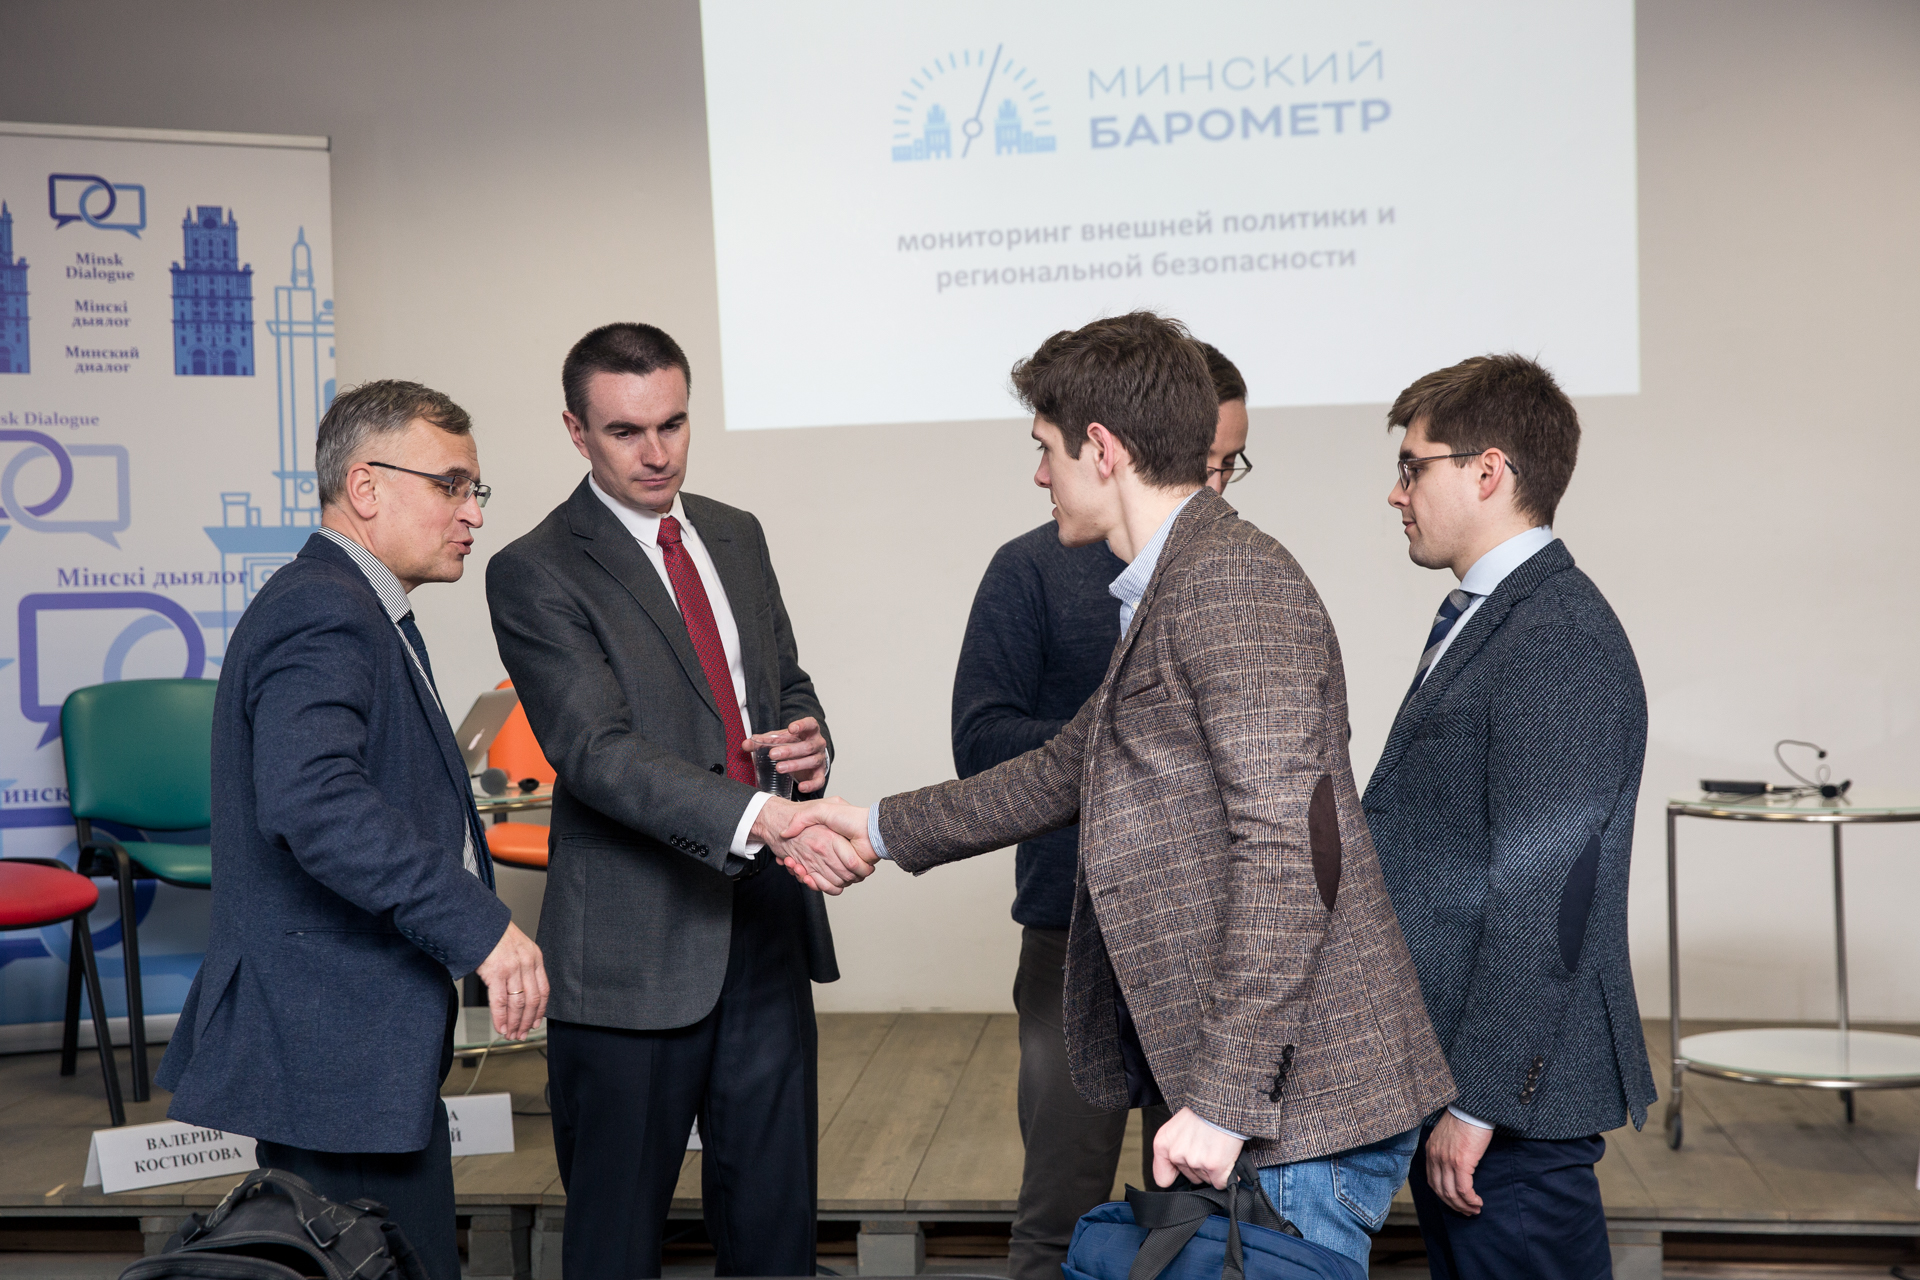 Minsk Barometer presentation